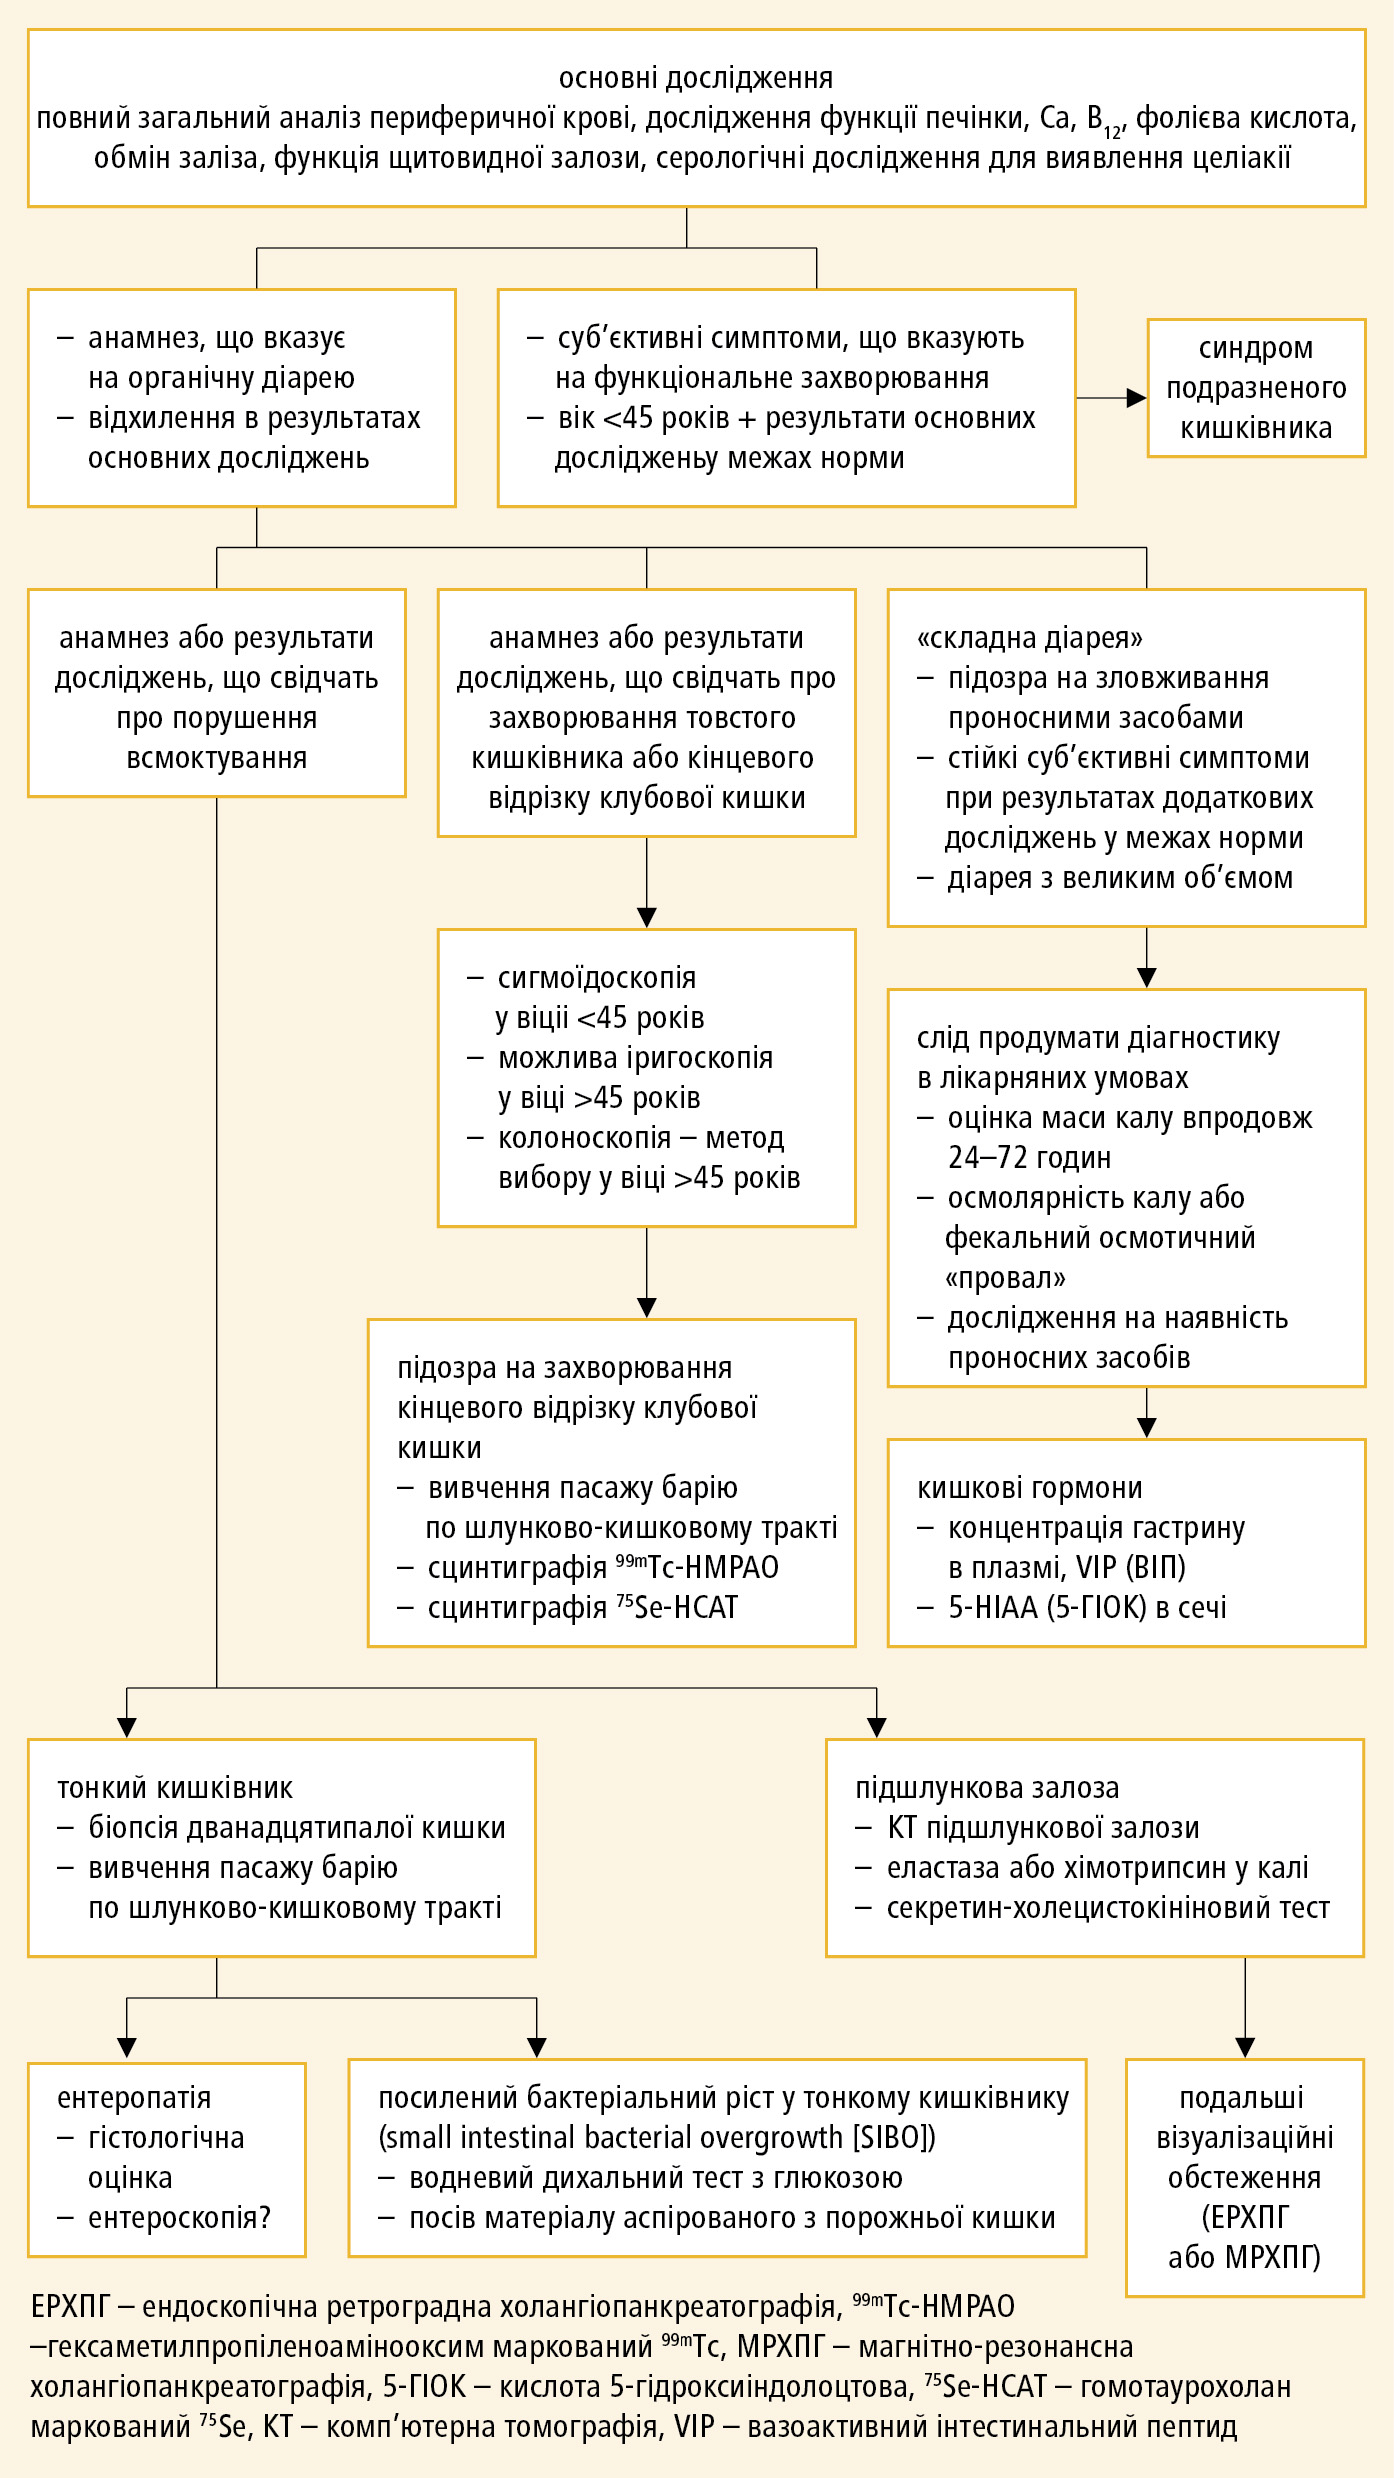 Алгоритм діагностики хронічної діареї (на основі рекомендацій БСГ, модифіковані)